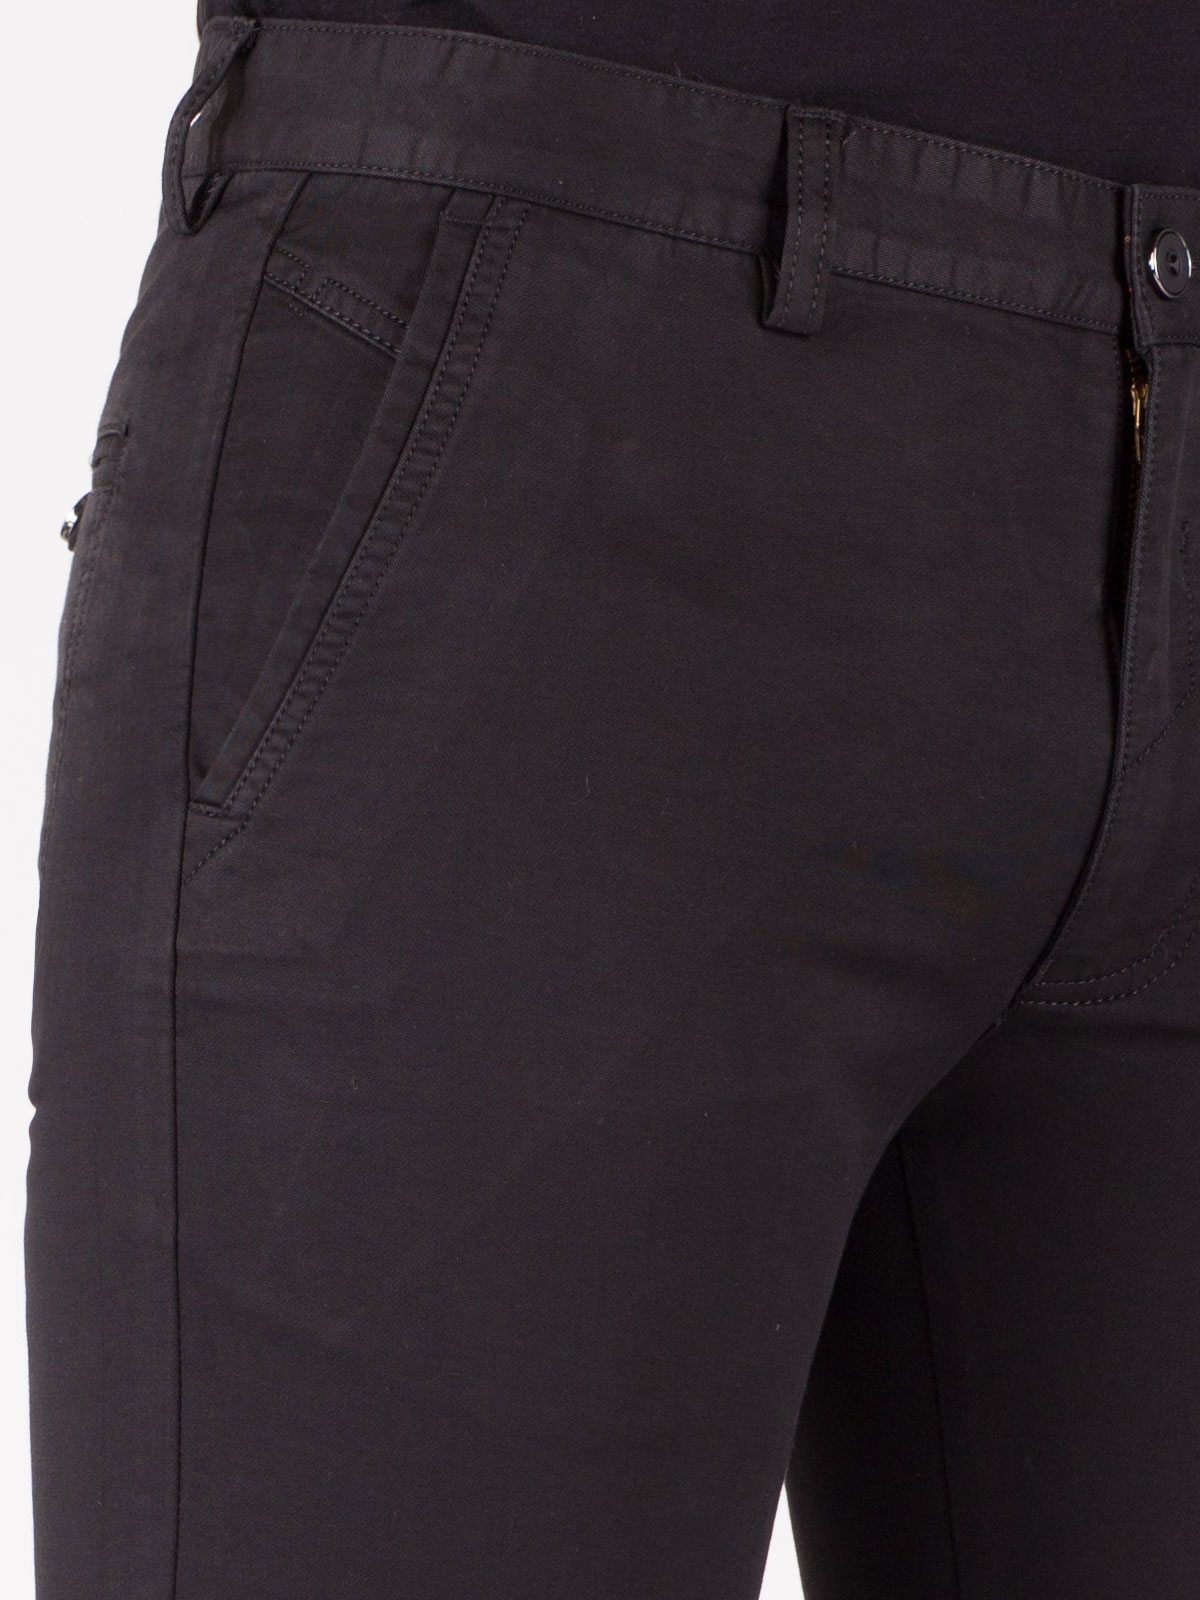 Pantaloni din bumbac negru si tencel - 60181 € 11.25 img3